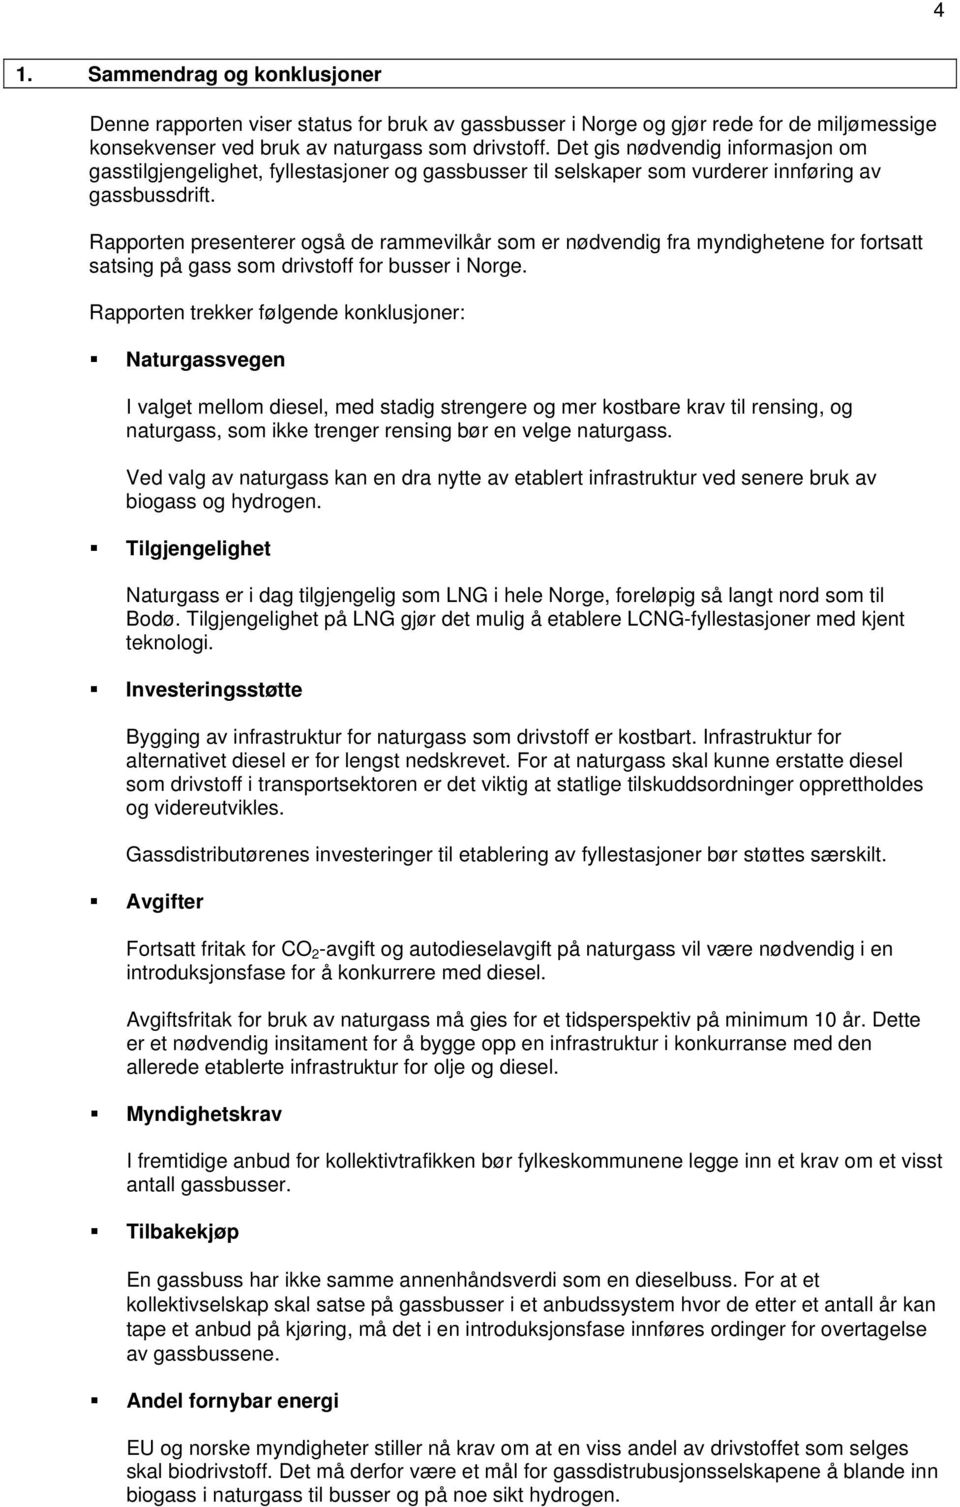 Rapporten presenterer også de rammevilkår som er nødvendig fra myndighetene for fortsatt satsing på gass som drivstoff for busser i Norge.